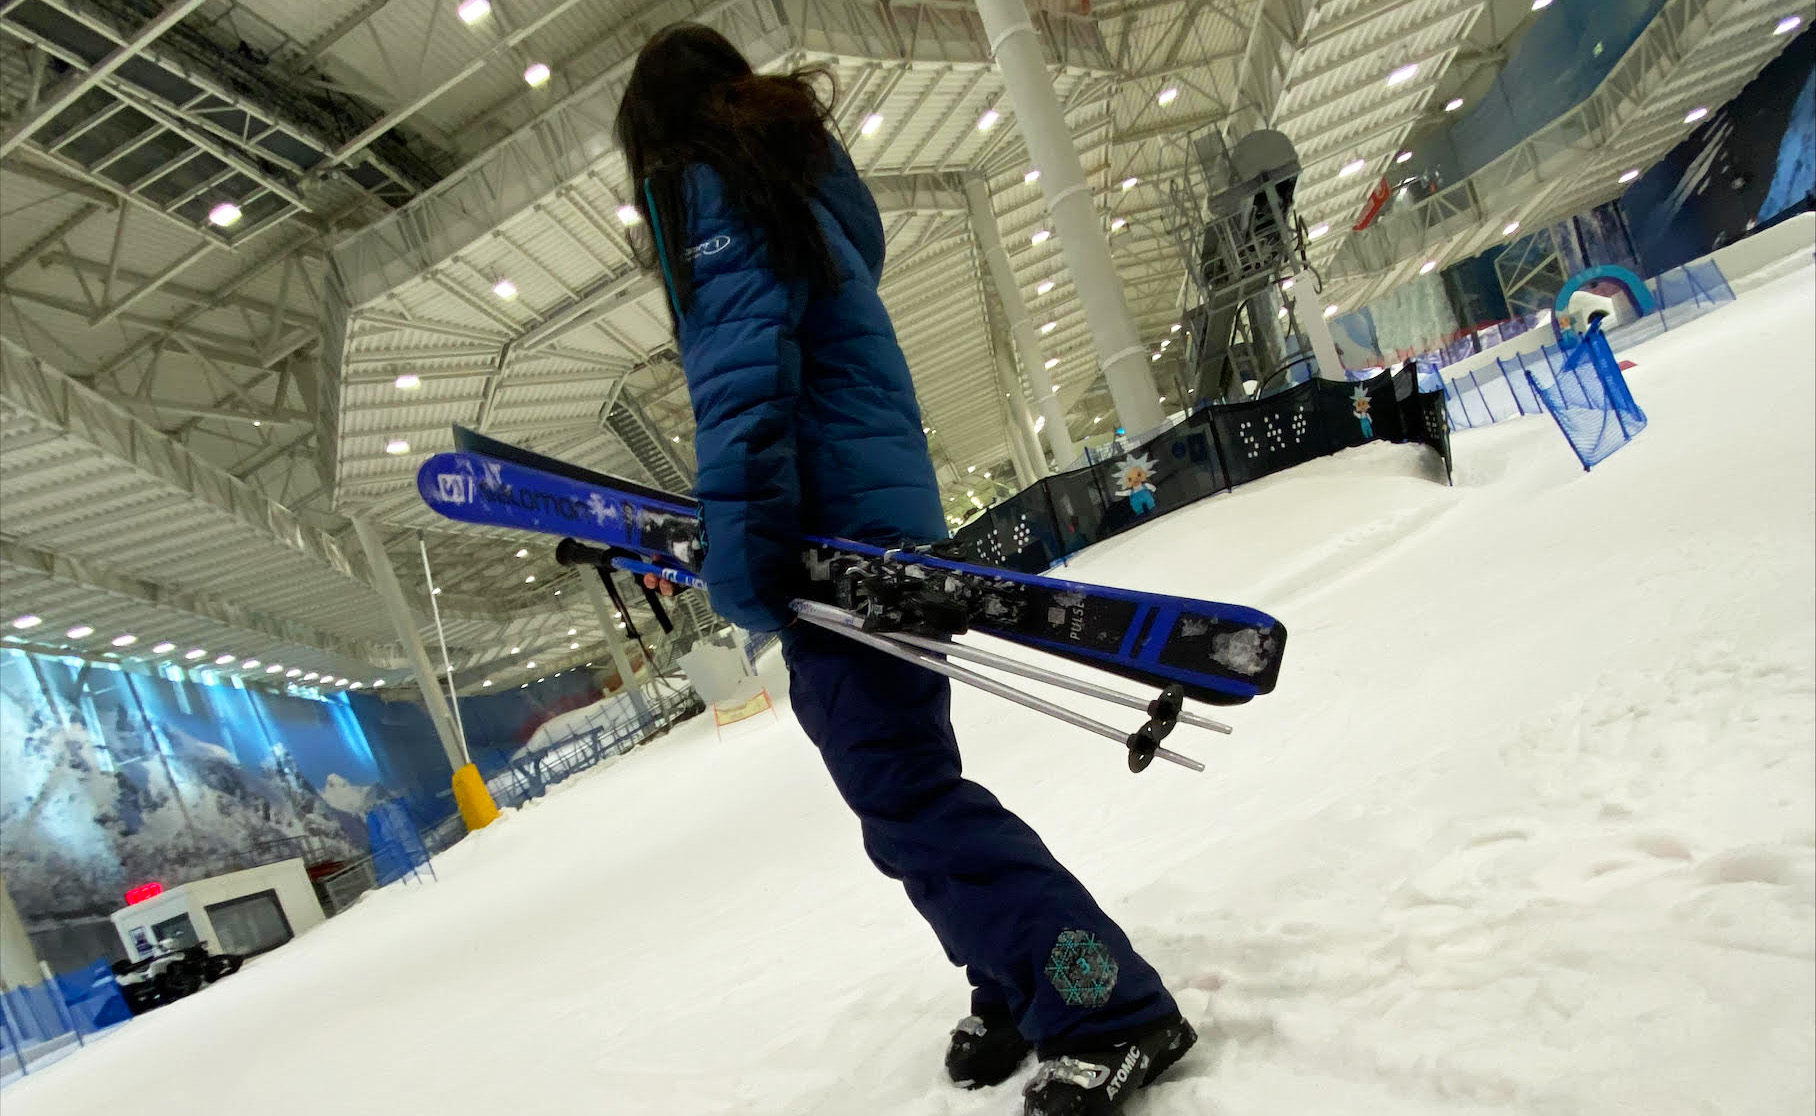 Nevin overrasket kjæresten med gavekort på SNØ Indoor Skipark – “Det beste var å oppfylle en av kjæresten min sine drømmer”